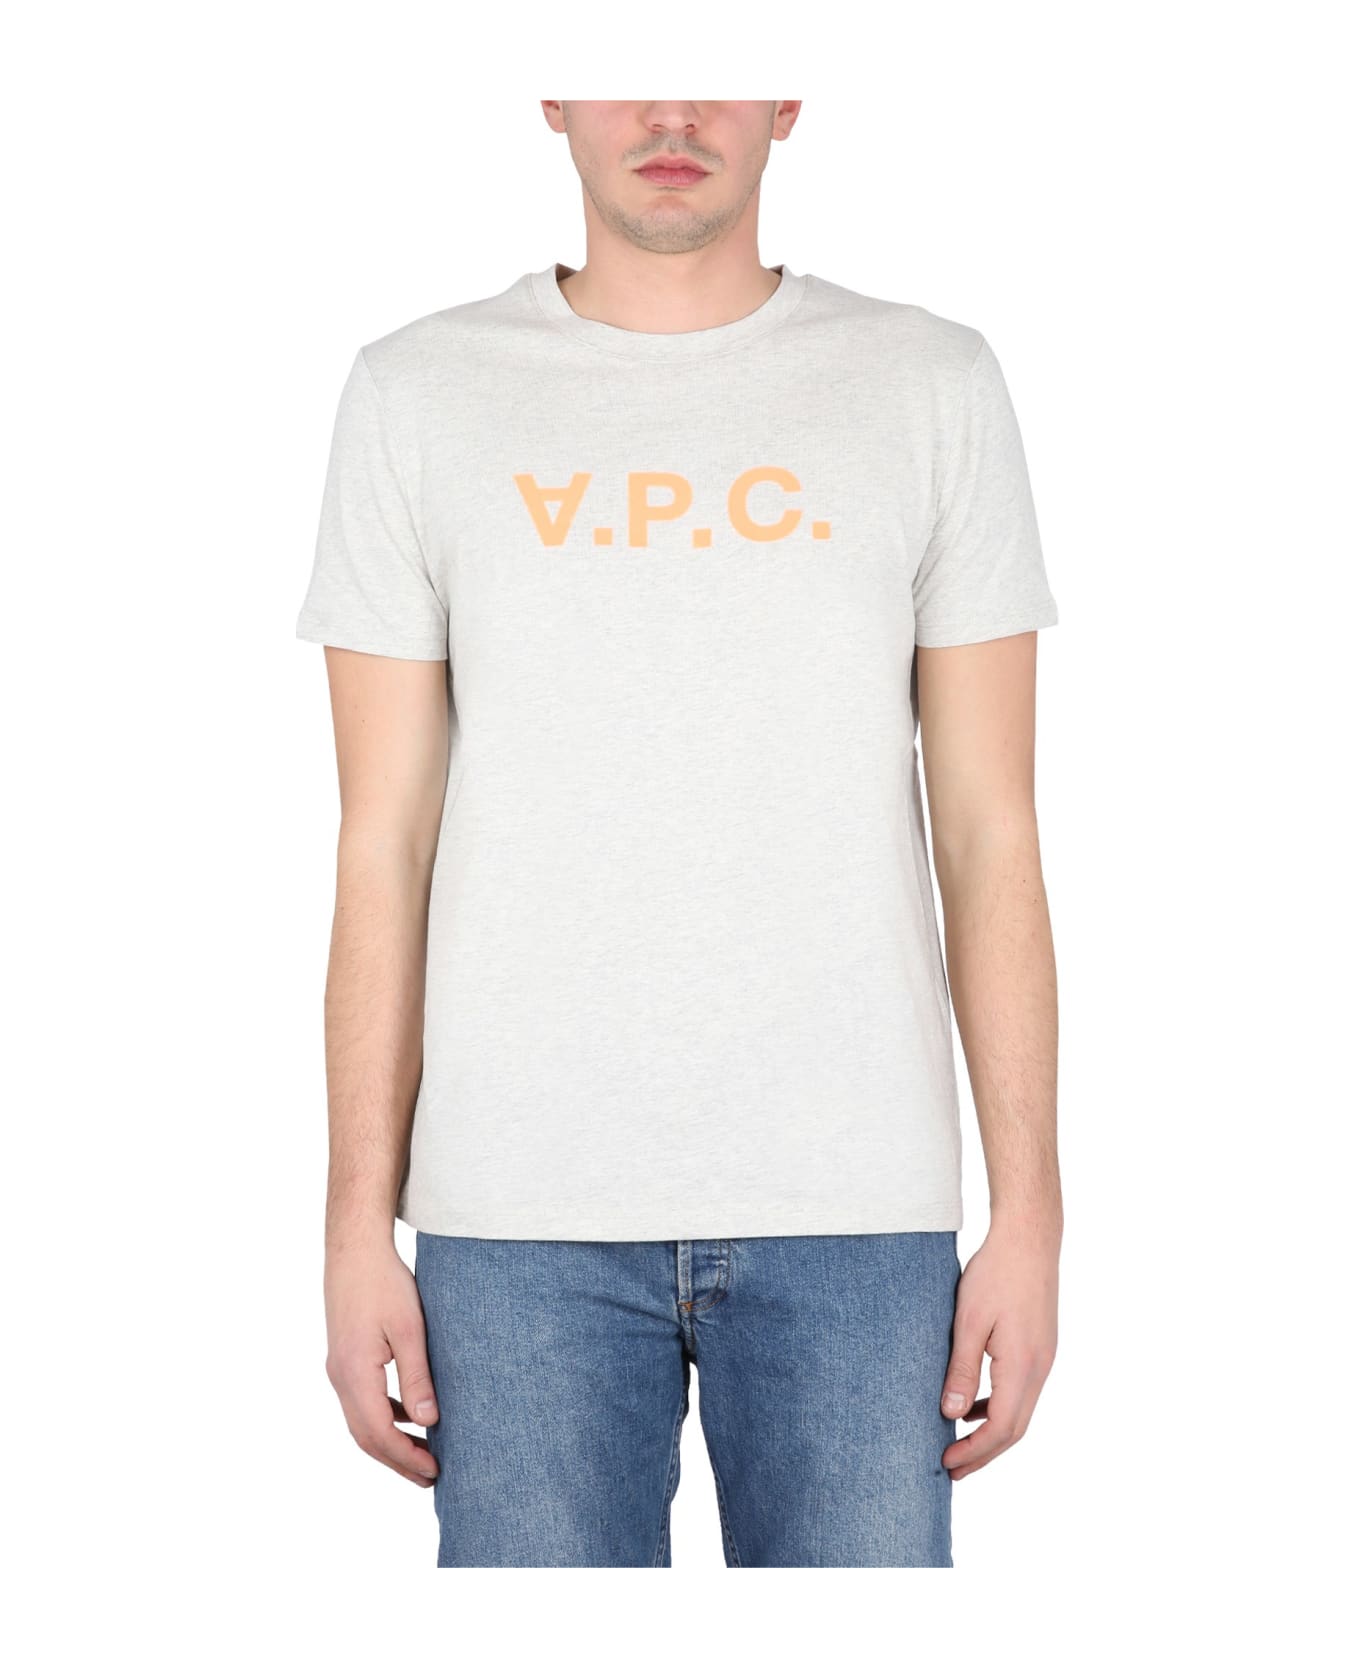 A.P.C. T-shirt With V.p.c Logo - Tav Ecru Chine Orange